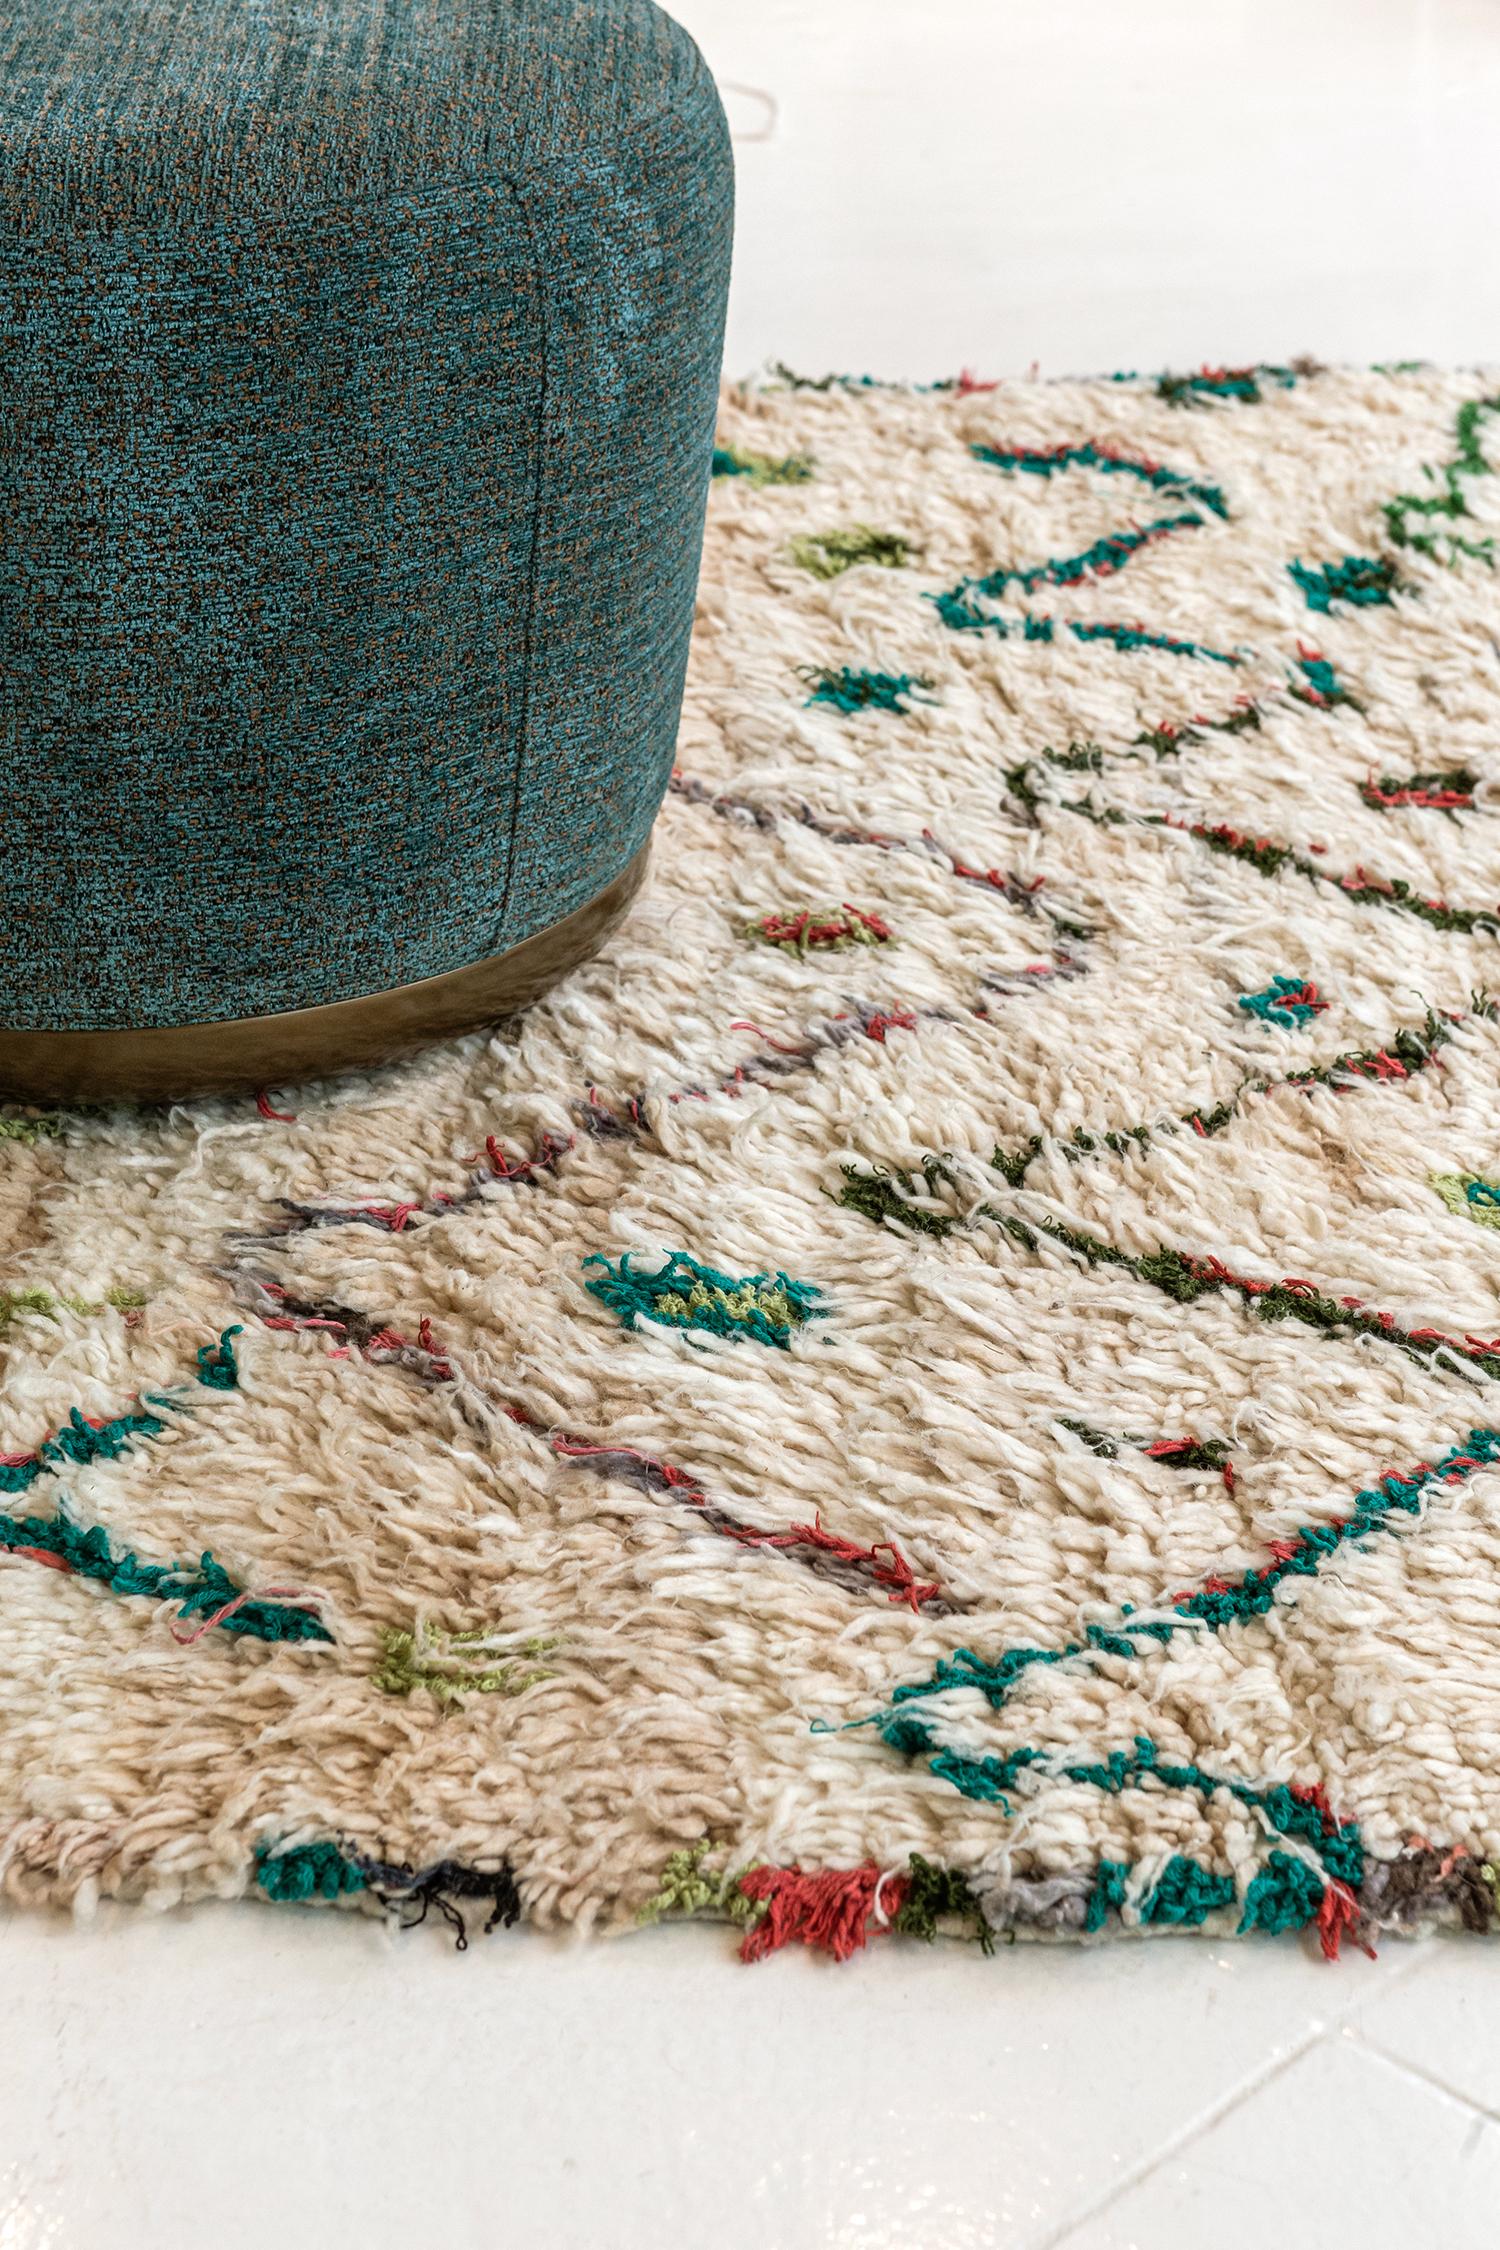 Ein verspielter marokkanischer Berberteppich des Azilal-Stammes in bunten Farbtönen. Dieser atemberaubende Teppich zeigt ein Allover-Muster aus mehrdeutigen symbolischen Berber-Motiven, die den Schutz und die unterschiedlichen Rollen von Männern und